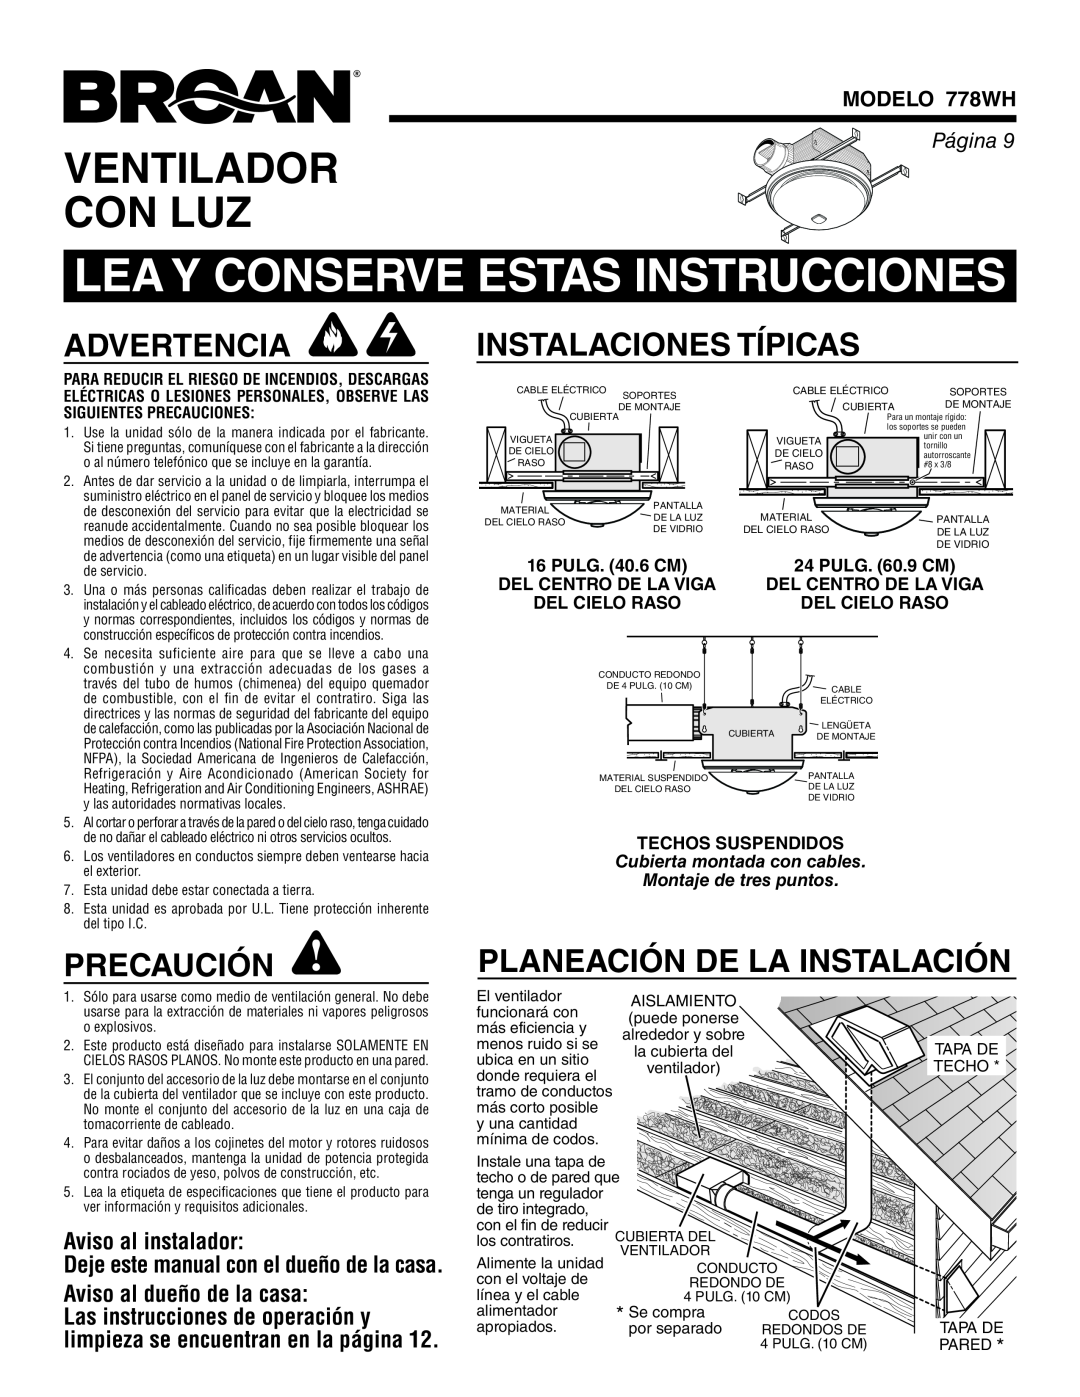 Broan 778WH Lea Y Conserve Estas Instrucciones, Ventilador Con Luz, Advertencia, Precaución, Instalaciones Típicas, Página 